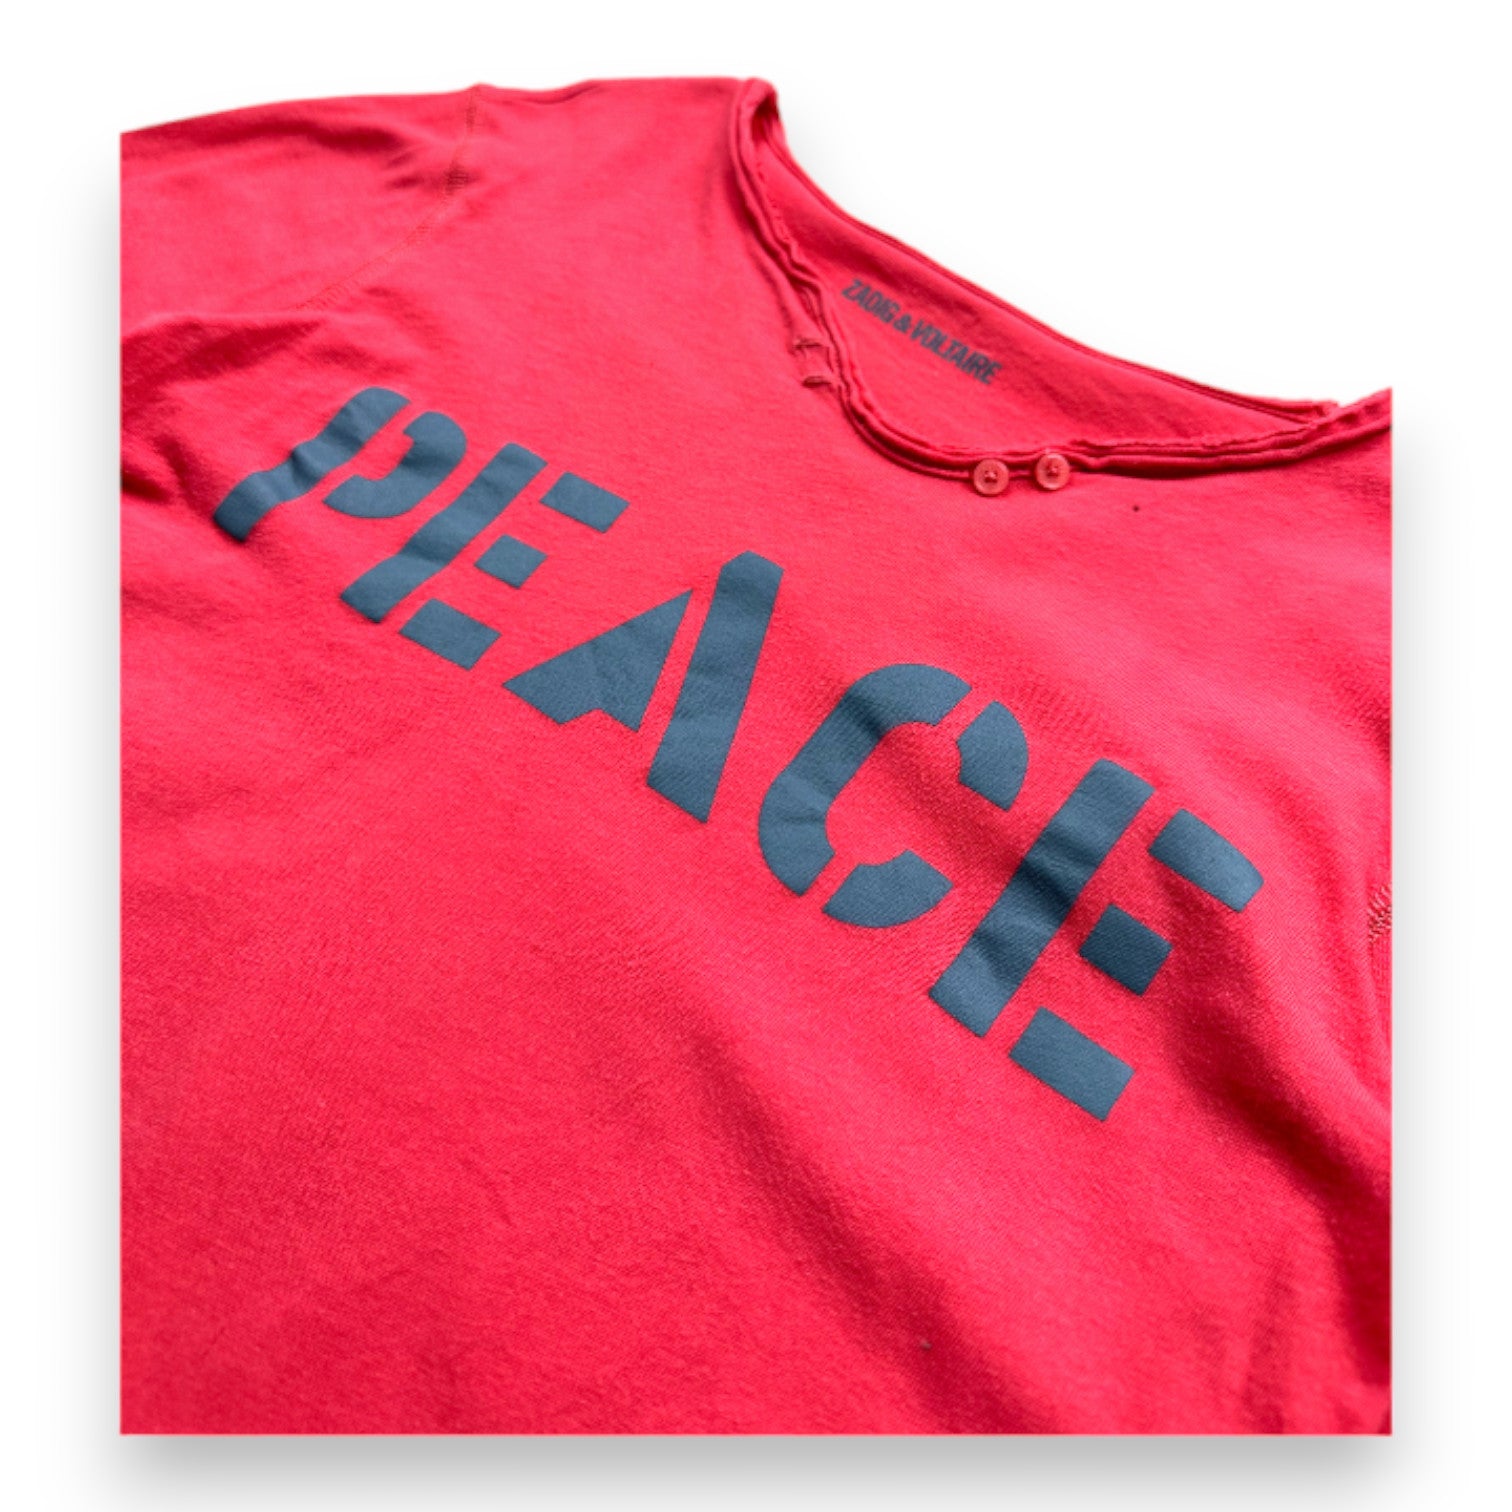 ZADIG & VOLTAIRE - T-shirt à manches longues rose imprimé "Peace" - 10 ans